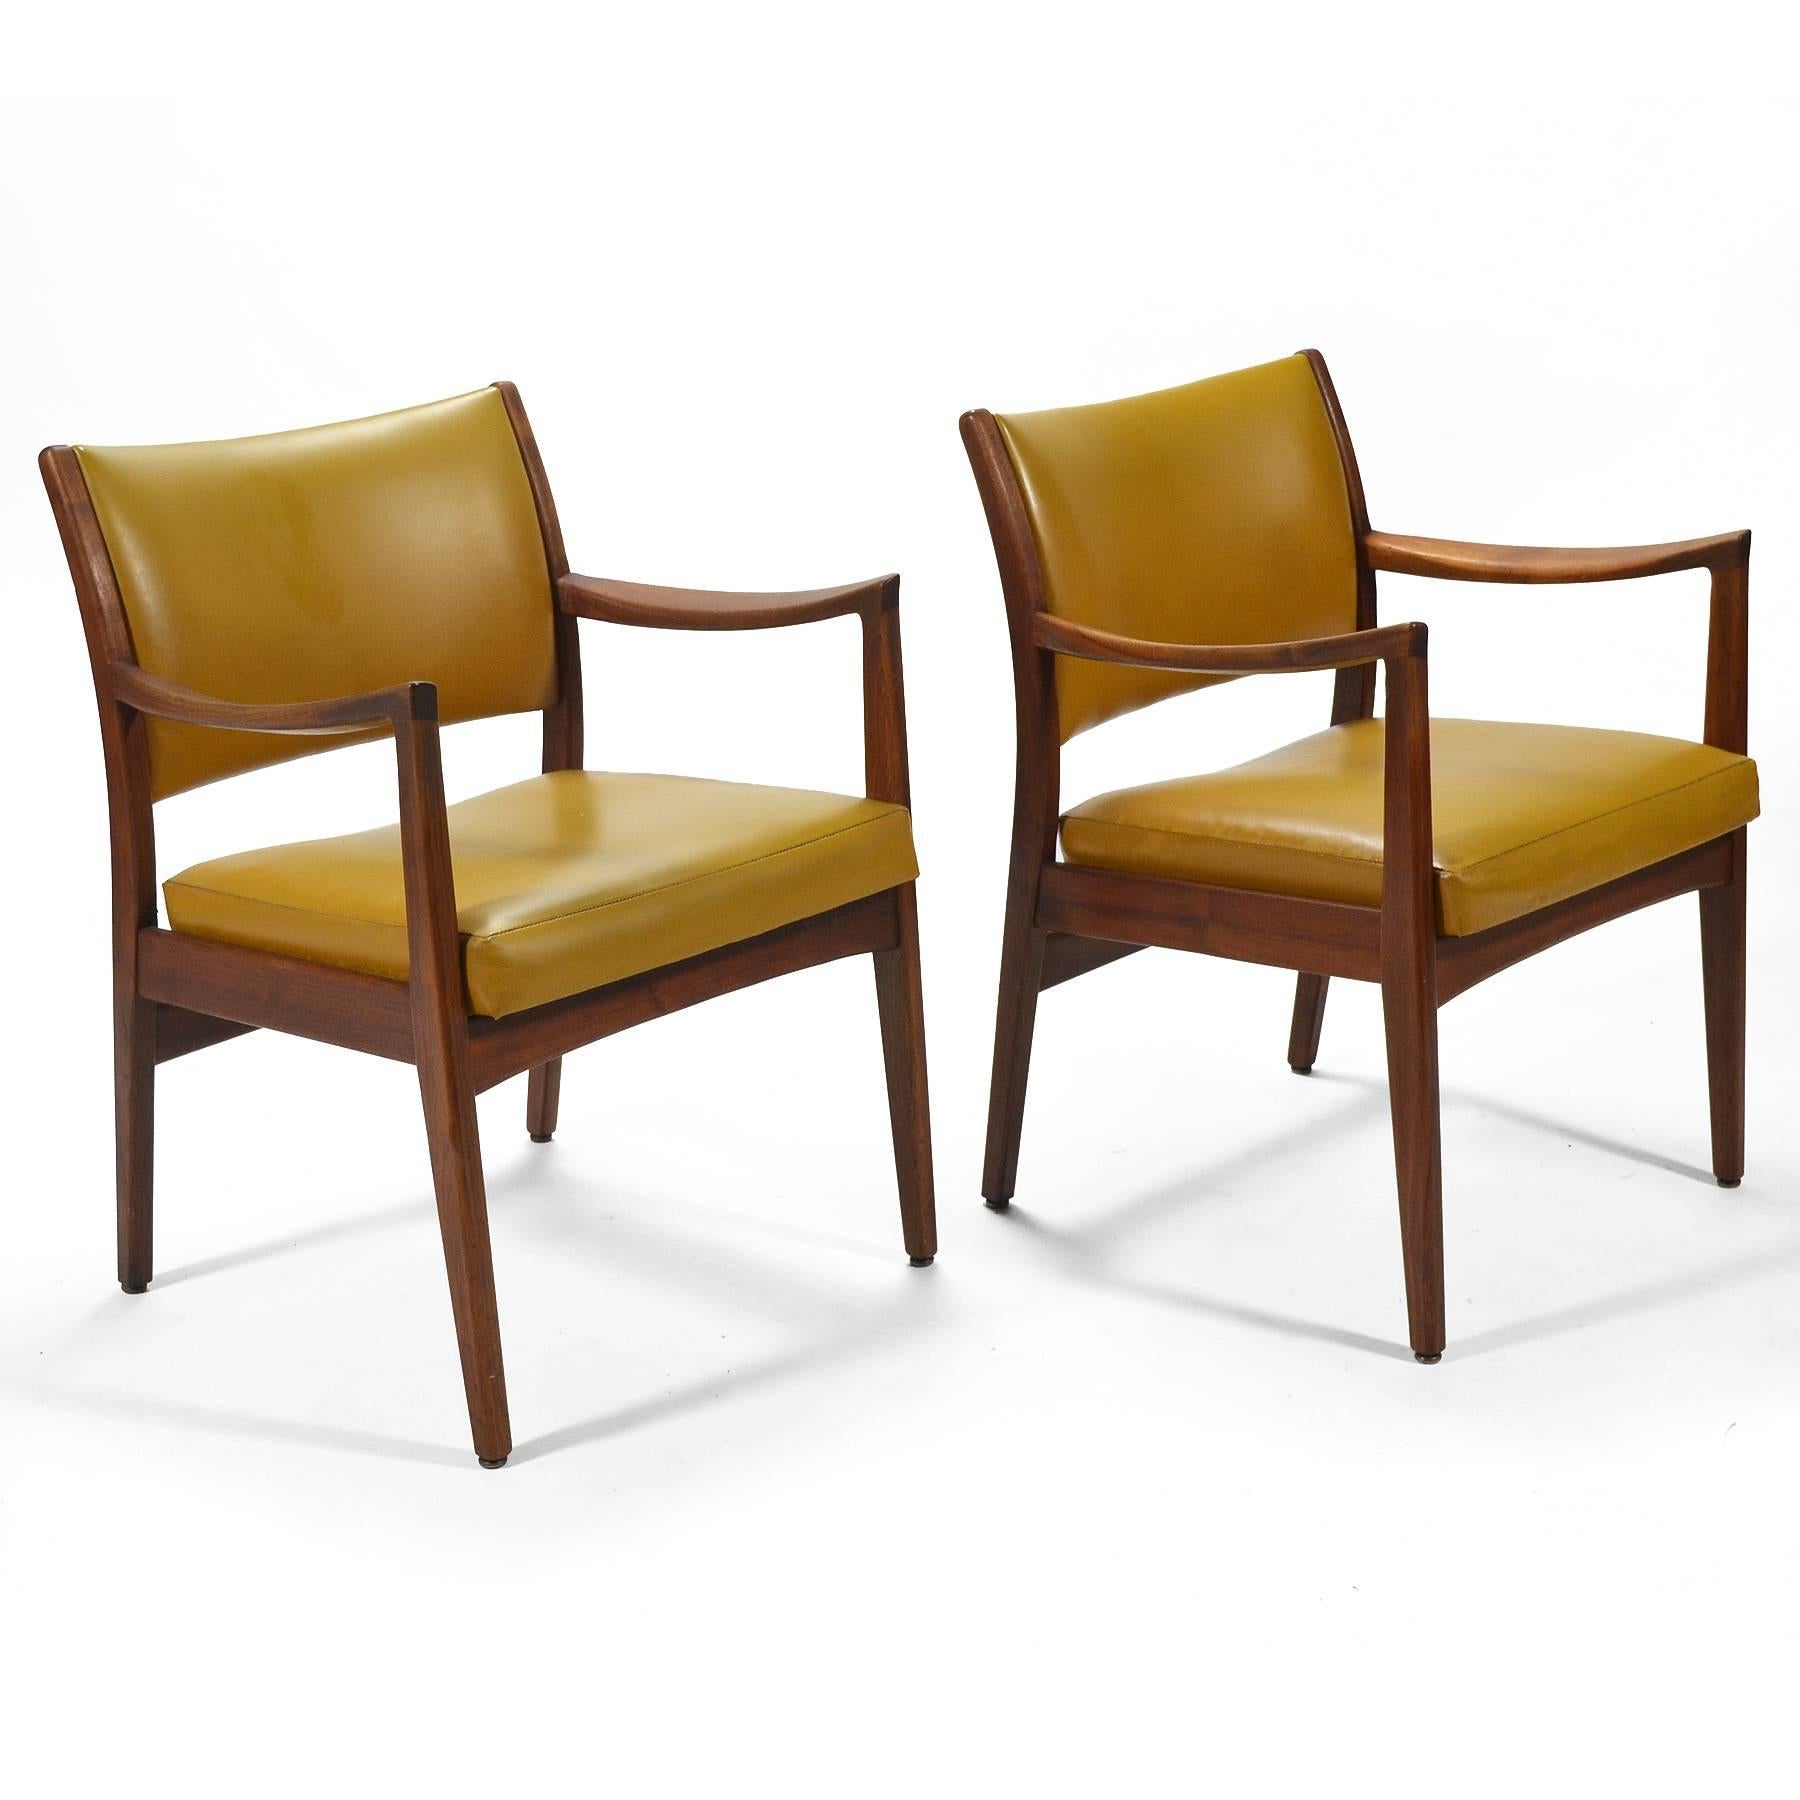 Diese Sessel der Johnson Chair Company haben schöne, geschnitzte Nussbaumrahmen mit sehr markanten Armlehnen. Sie erinnern uns an die Entwürfe von Jens Risom und Peter Wessel und haben eine fantastische Verarbeitungsqualität.